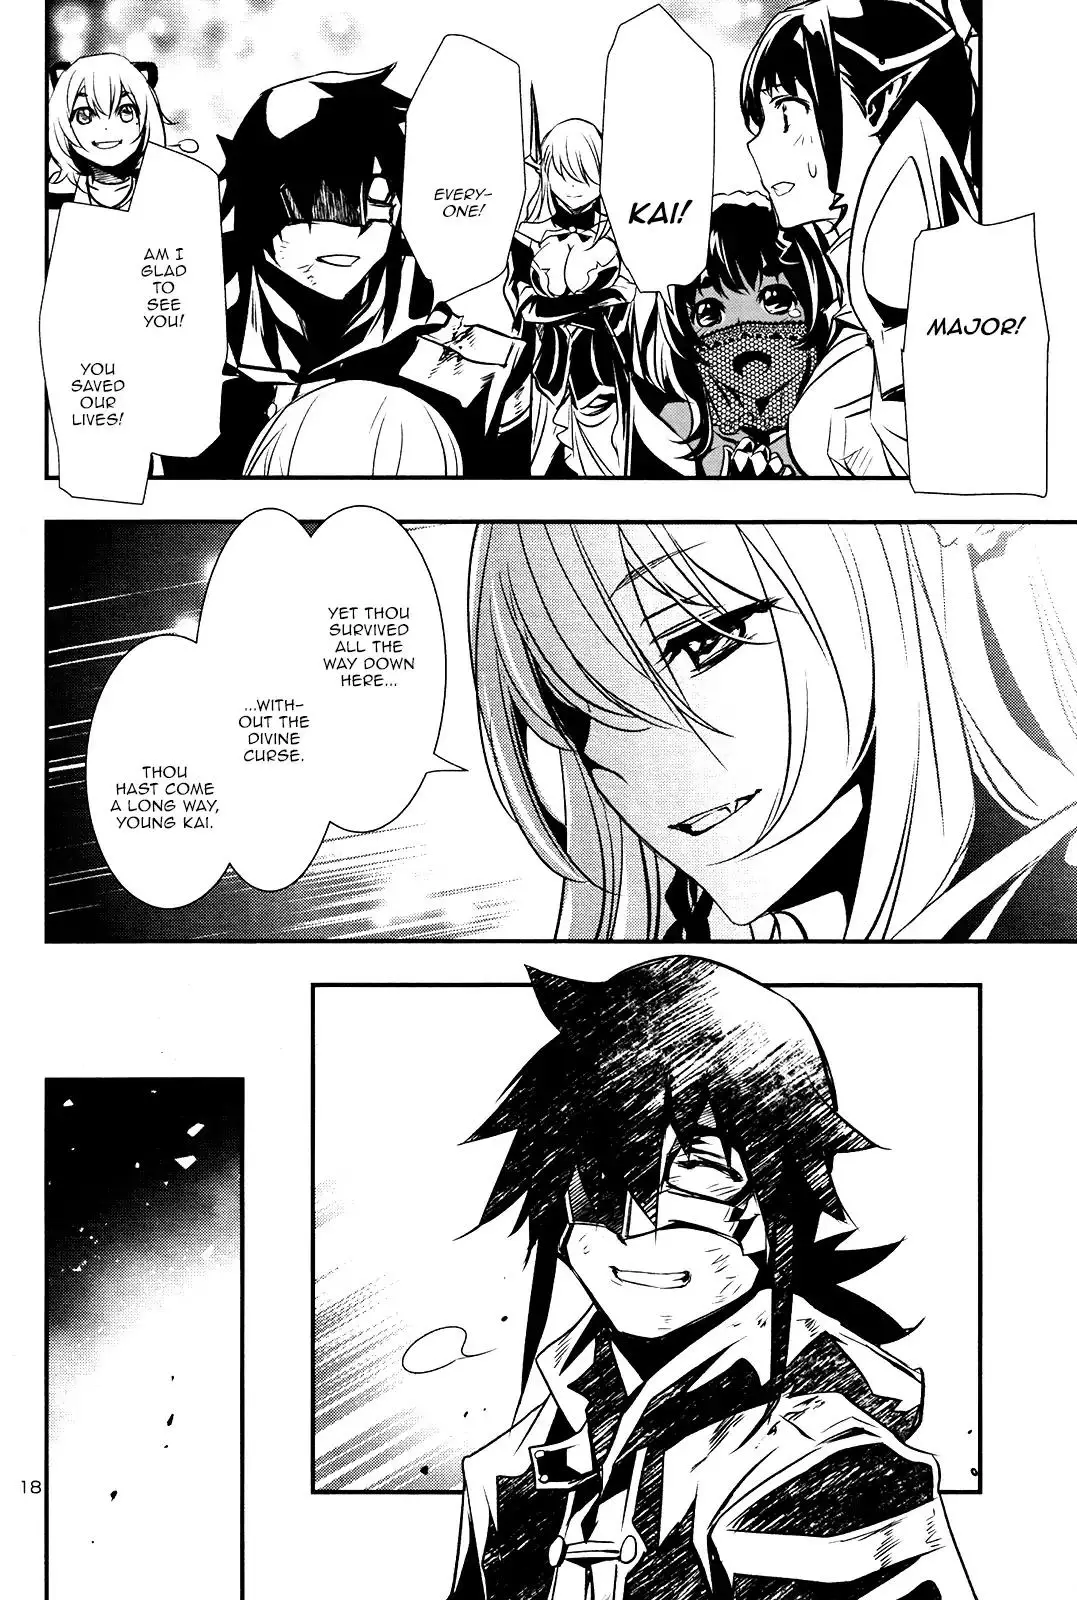 Shinju no Nectar - 19 page 17